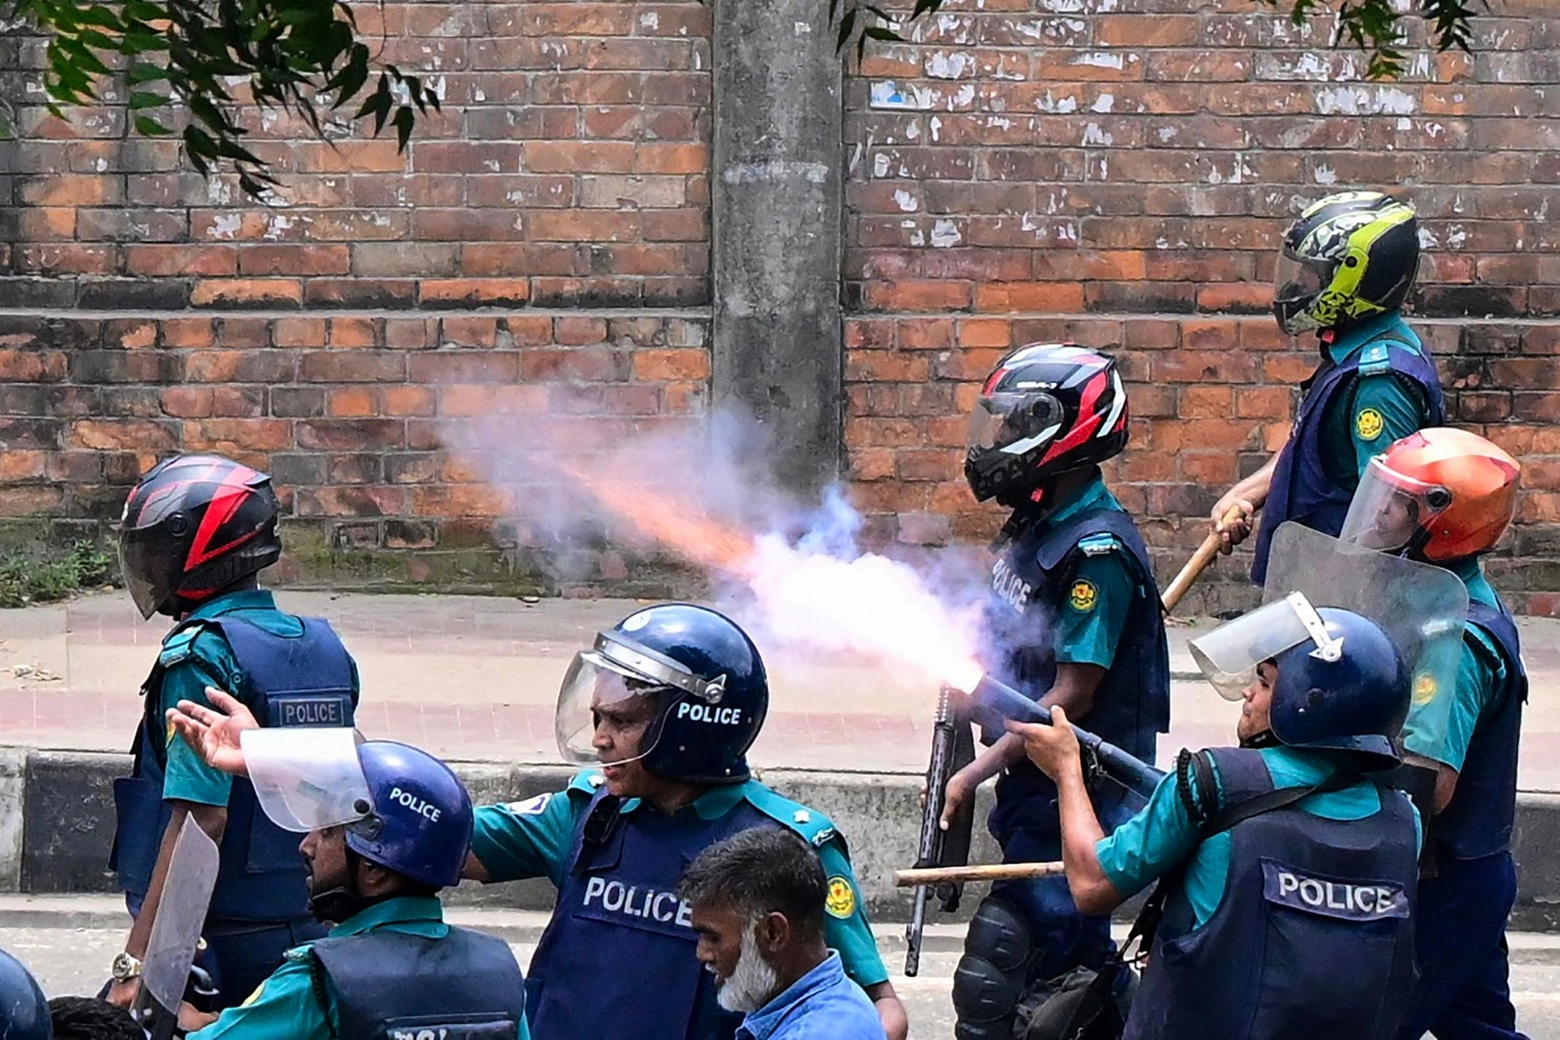 La polizia spara proiettili di gomma e lacrimogeni contro i manifestanti in Bangladesh